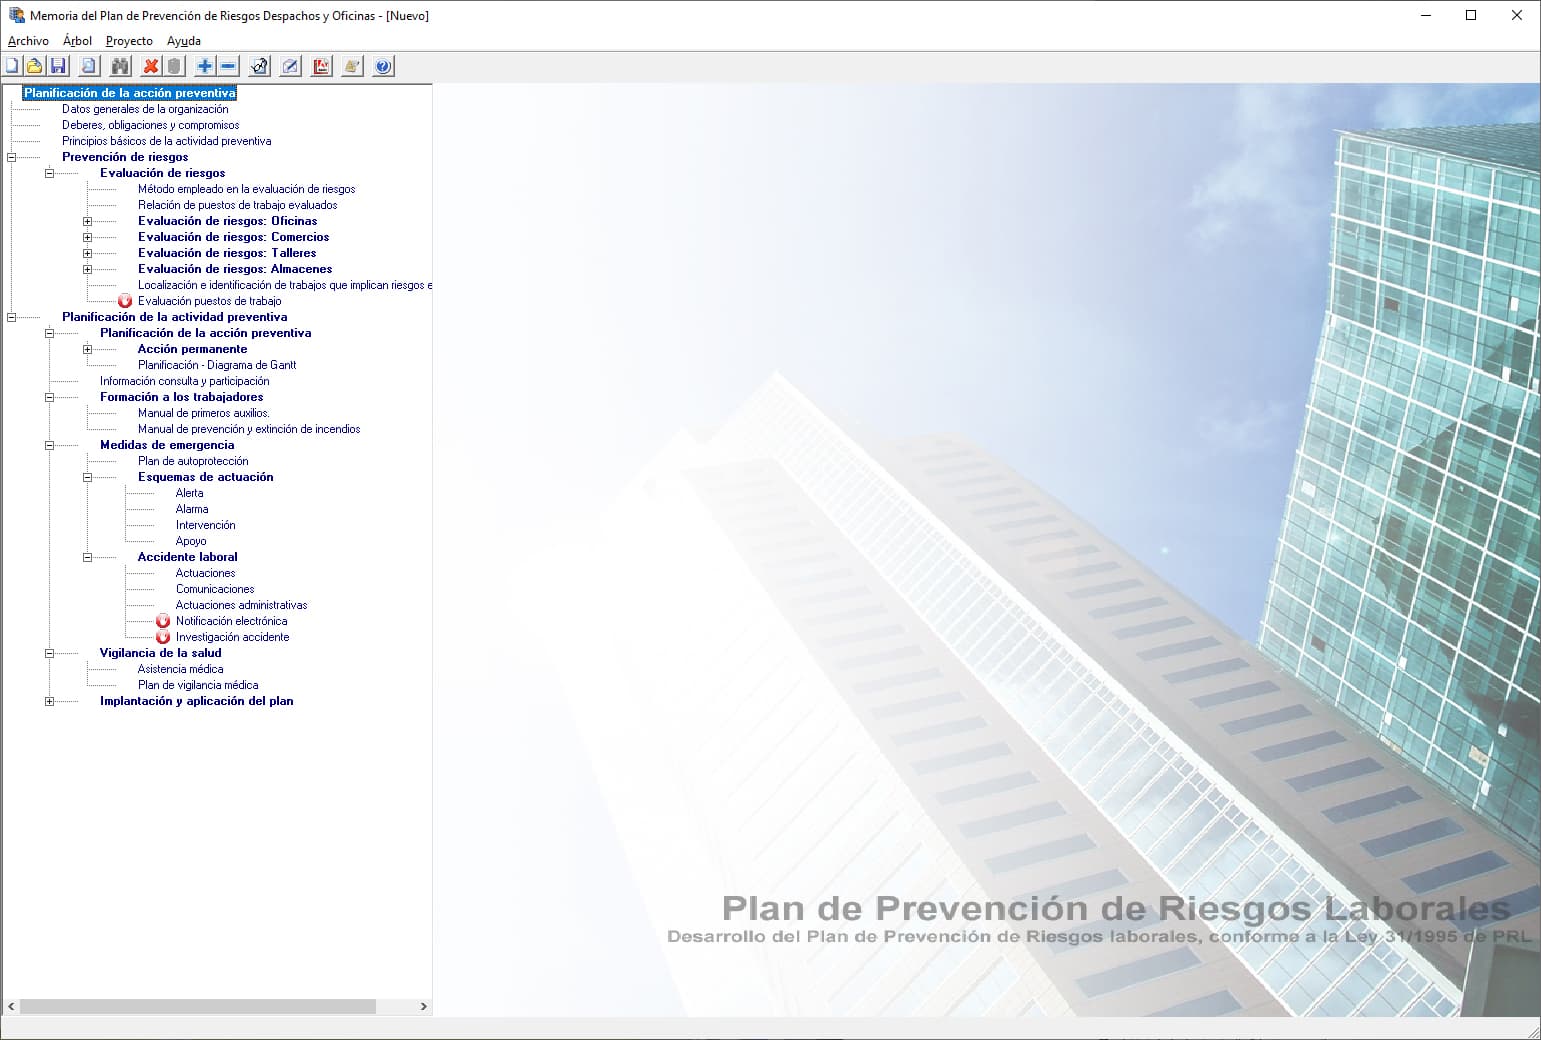 Programa de UrbiCAD para hacer la memoria del Plan de Prevención de Riesgos en despachos y oficinas